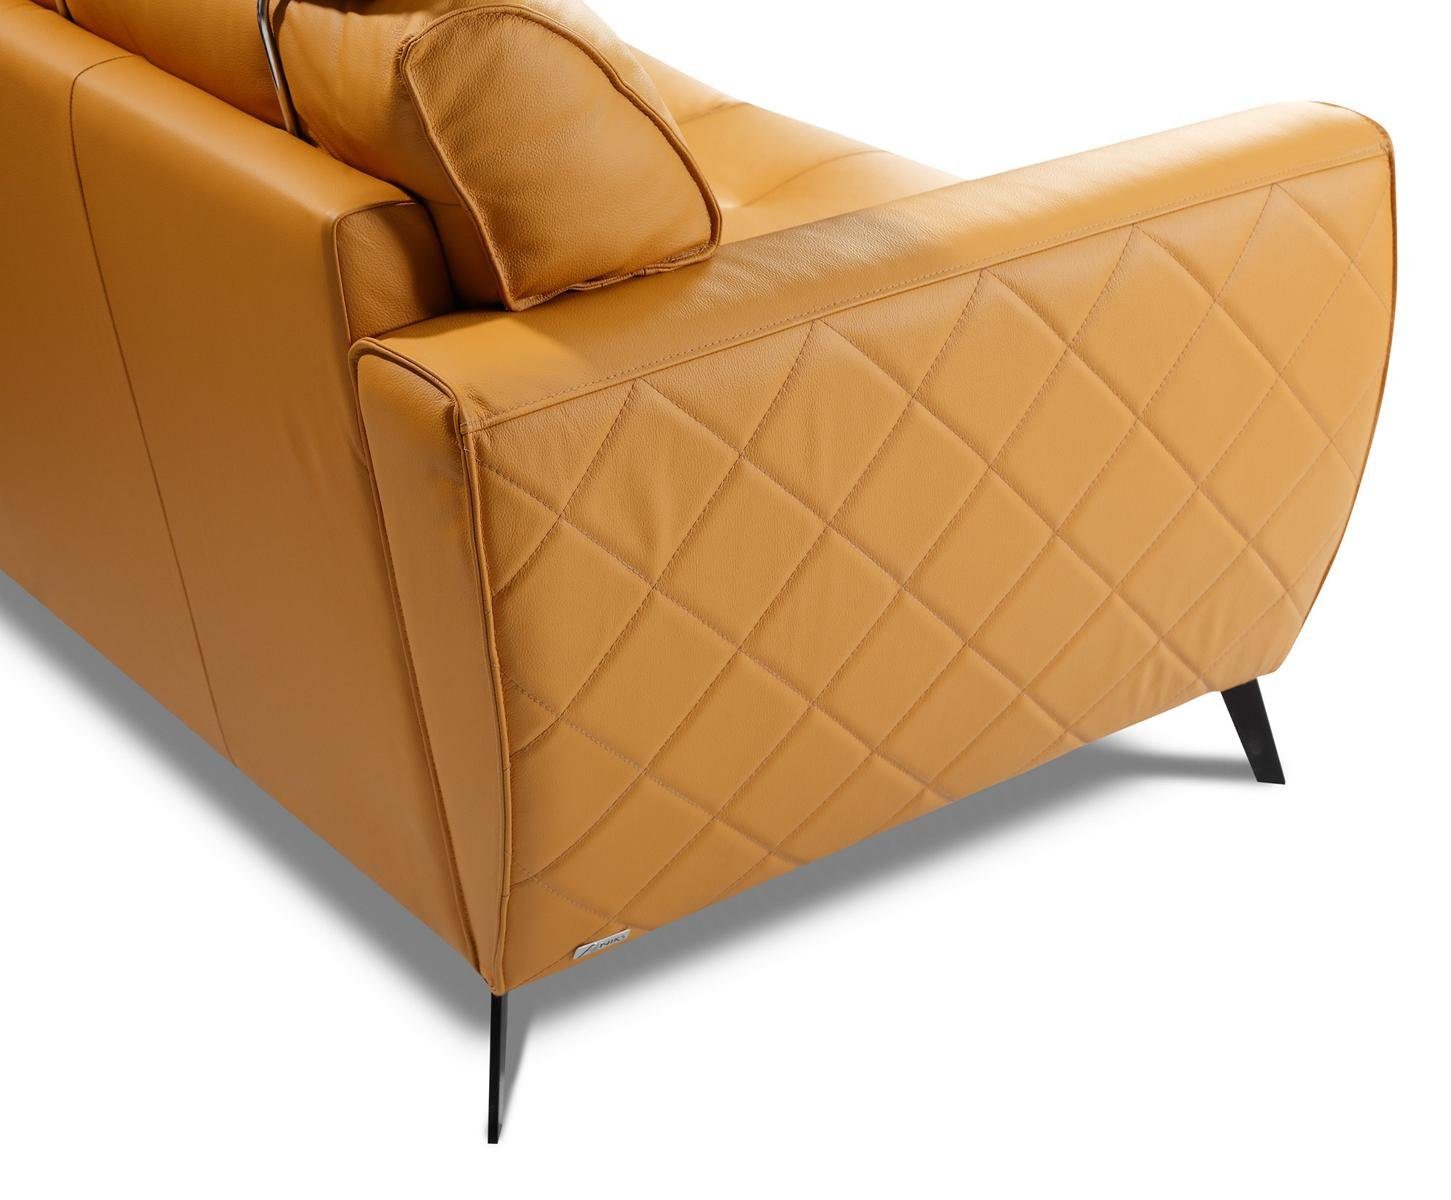 JVmoebel Garnituren Couch Garnitur Sitz Design Kunstleder Polster Leder Wohnzimmer-Set, Gelb 2+1